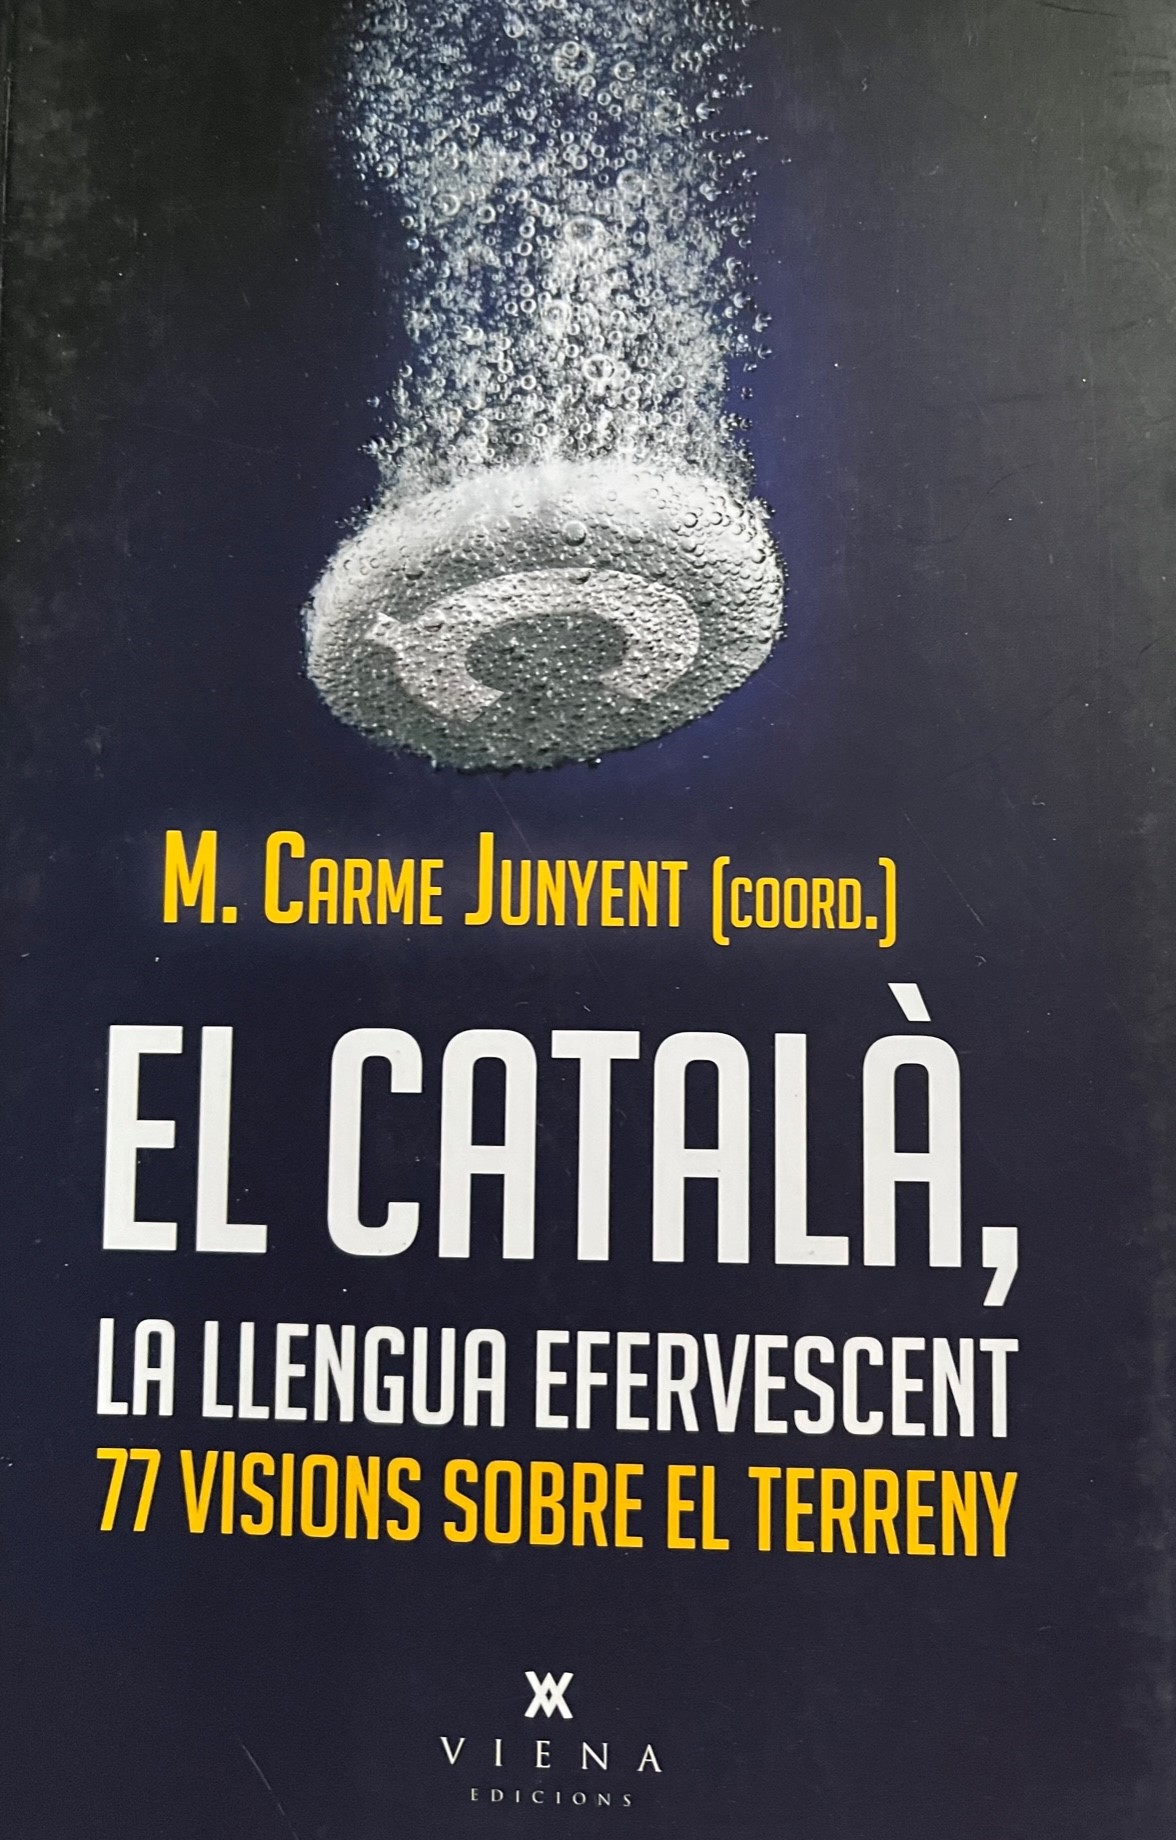 Photo of the cover of a book: "El Catala, la llengua efervescent: 77 vision sobre el terreny"